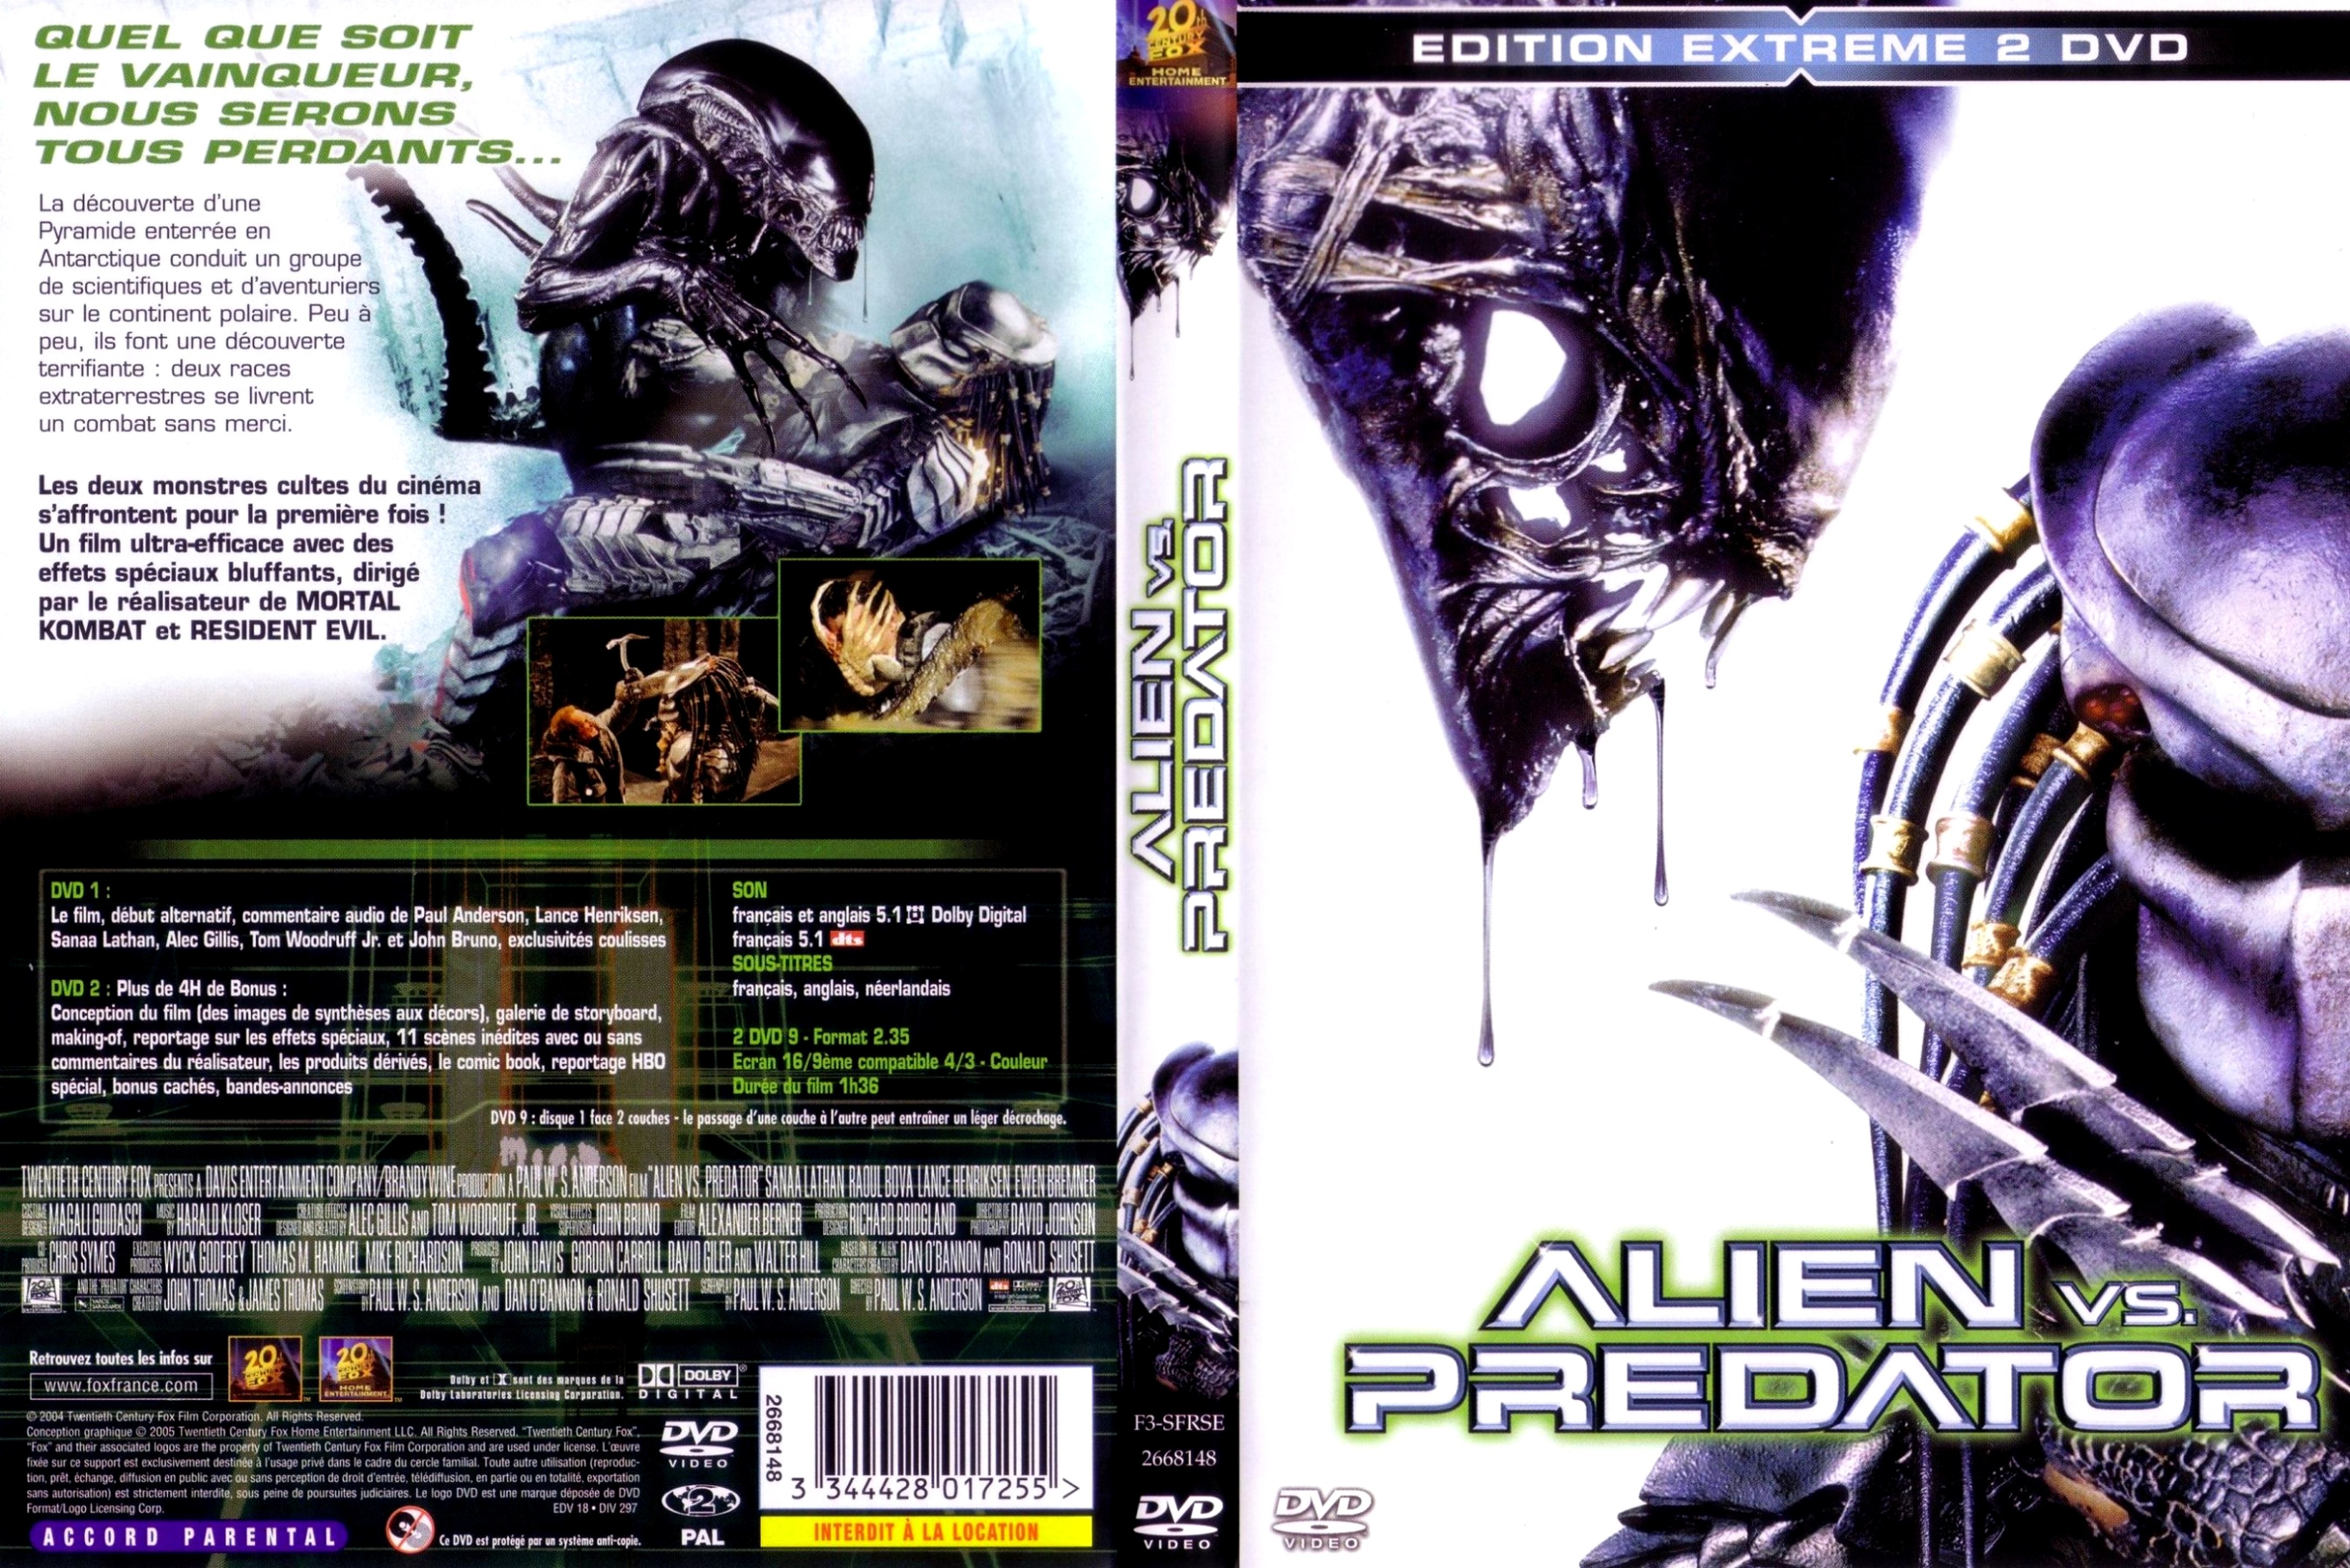 Jaquette DVD Alien vs Predator v2